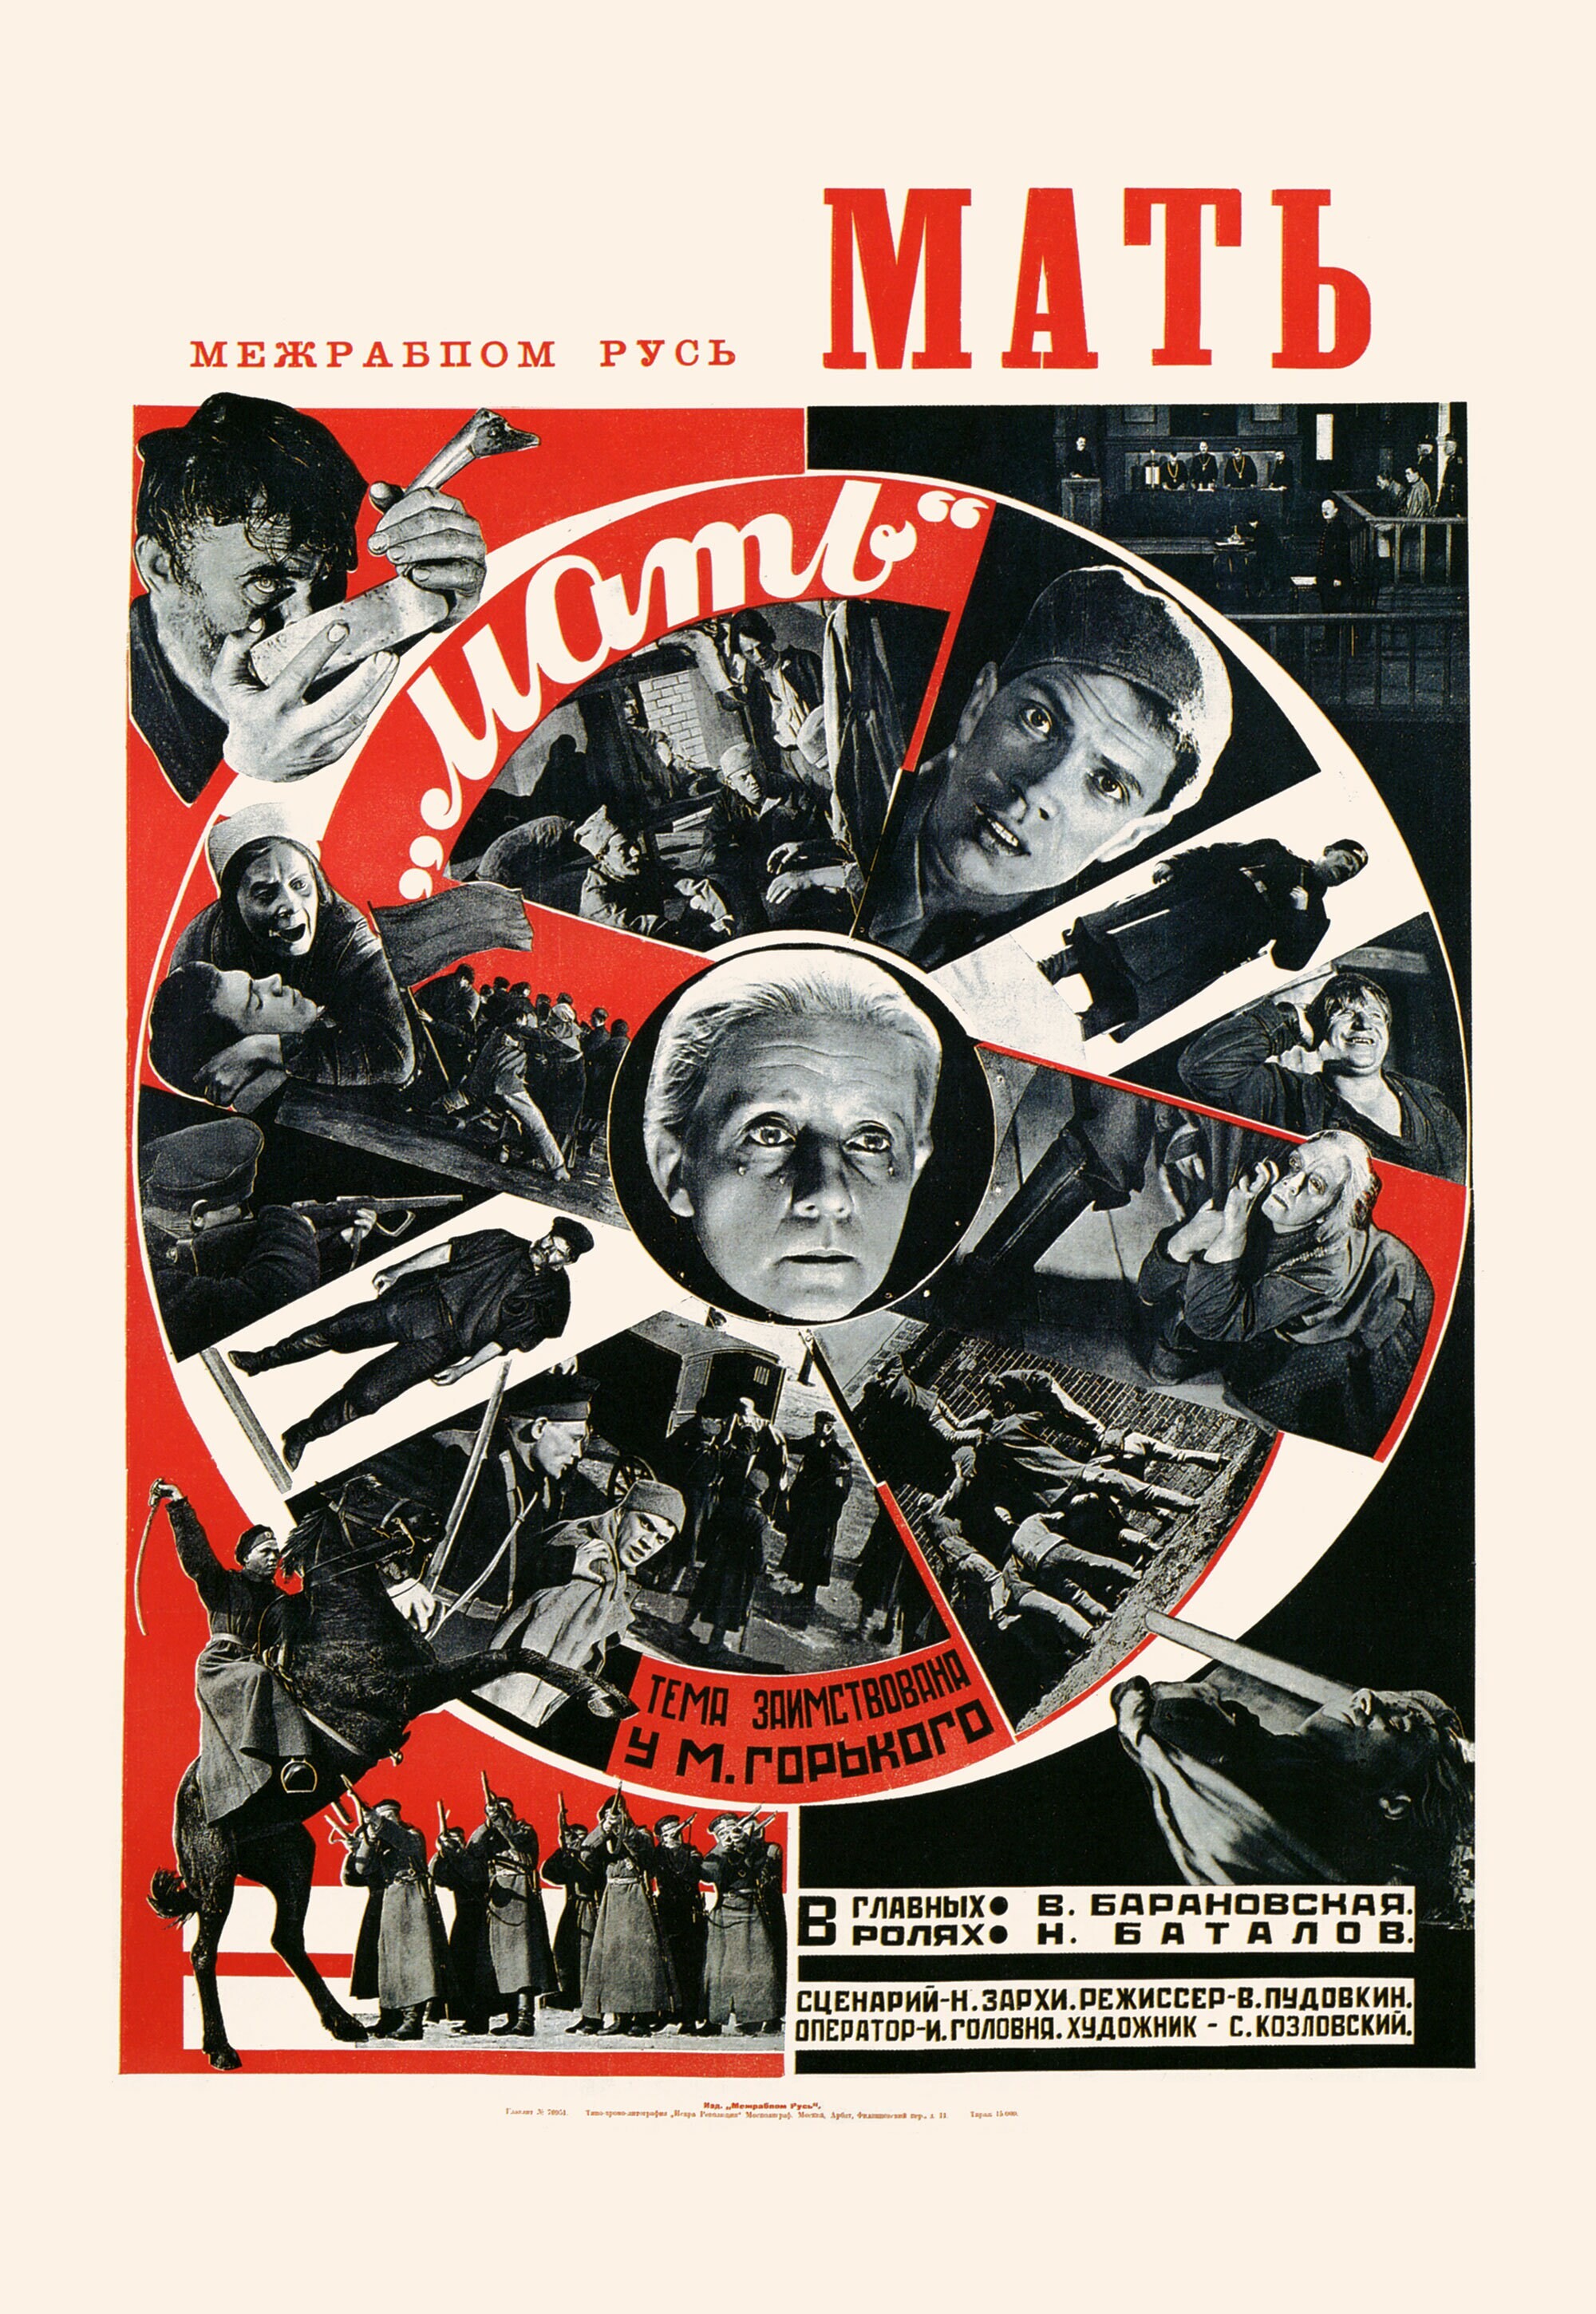 Мать, 1926 год, режиссёр В. Пудовкин, плакат к фильму, автор неизвестен (авангардное советское искусство, 1920-е)